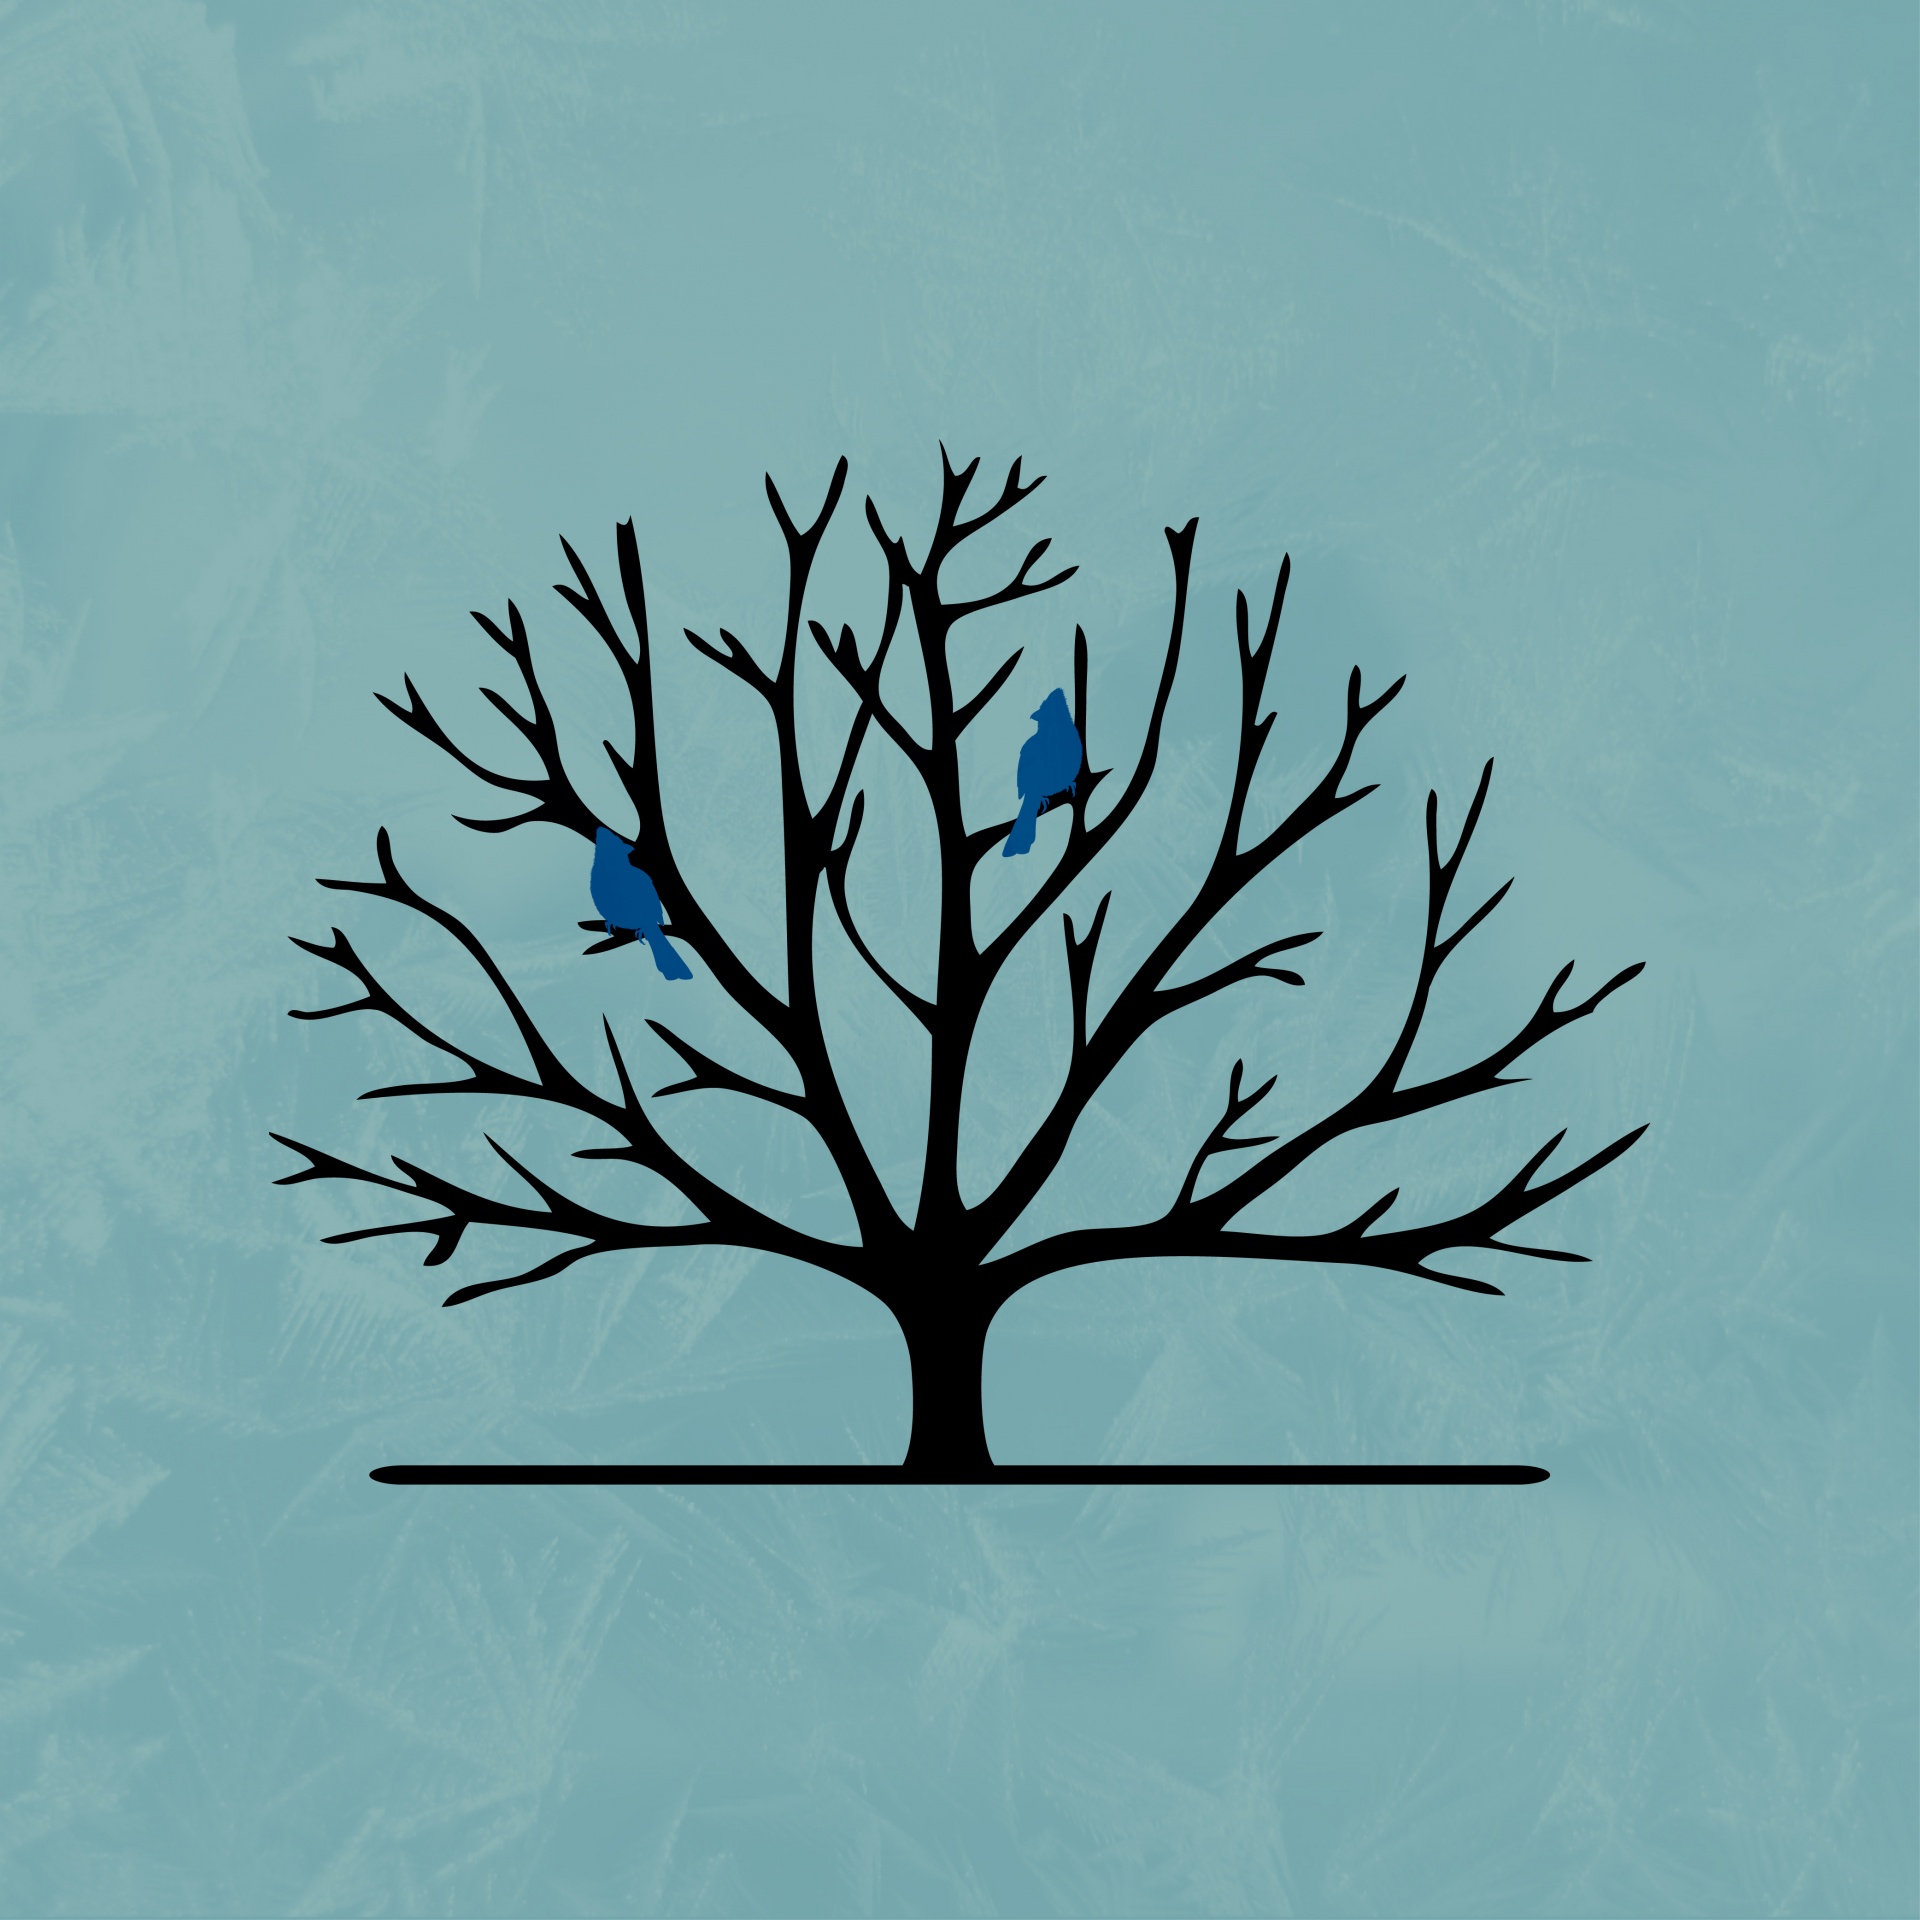 Las aves en la silueta del árbol